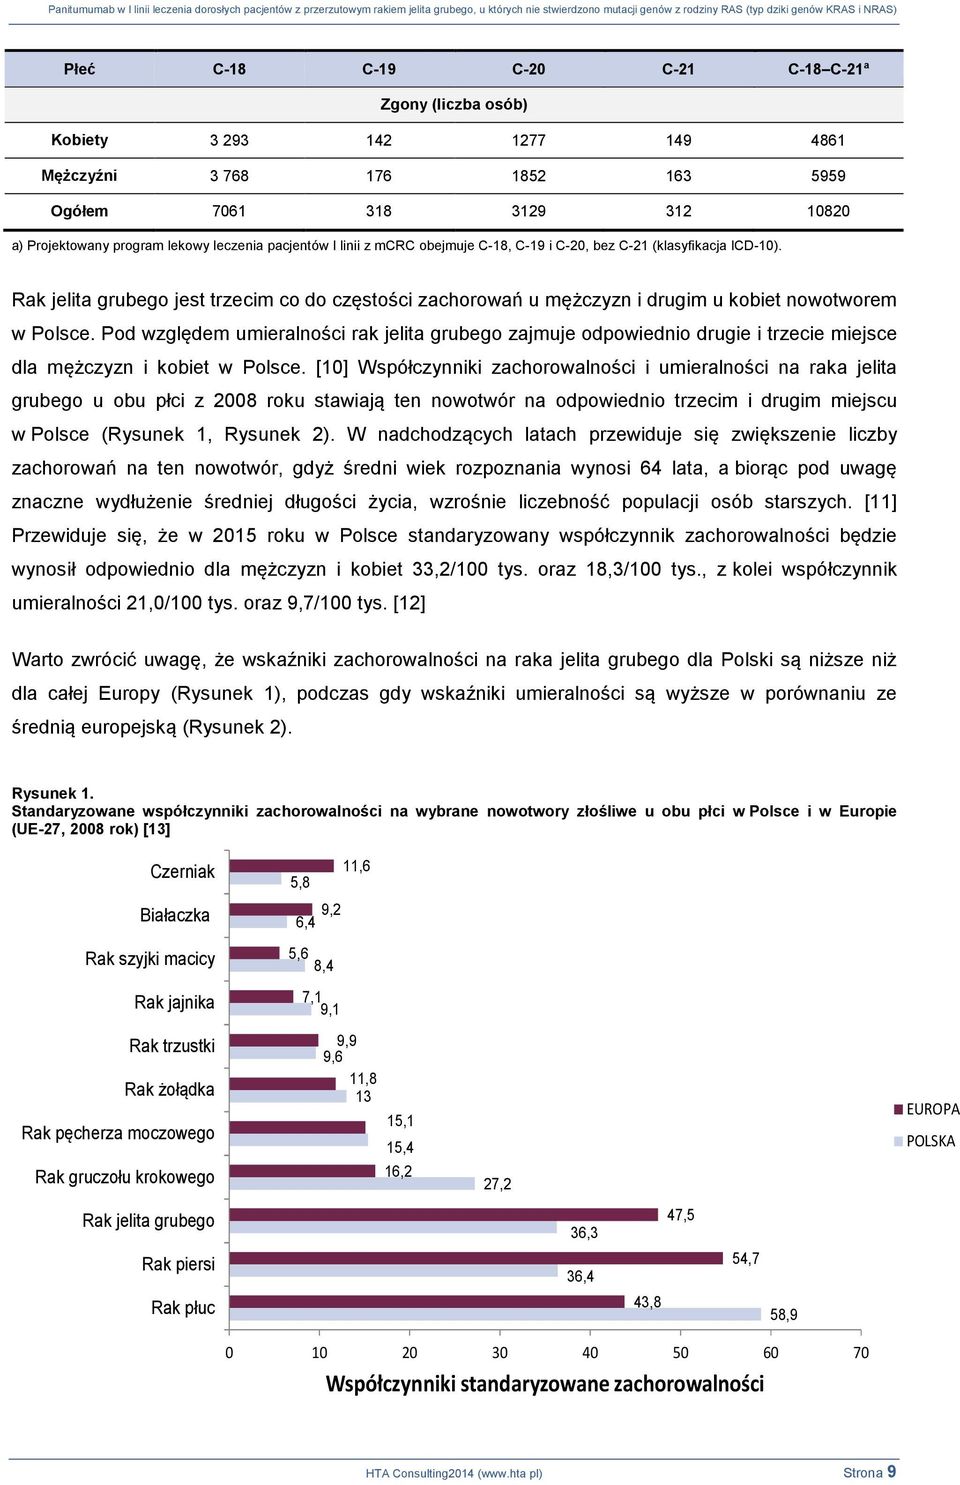 Pod względem umieralności rak jelita grubego zajmuje odpowiednio drugie i trzecie miejsce dla mężczyzn i kobiet w Polsce.